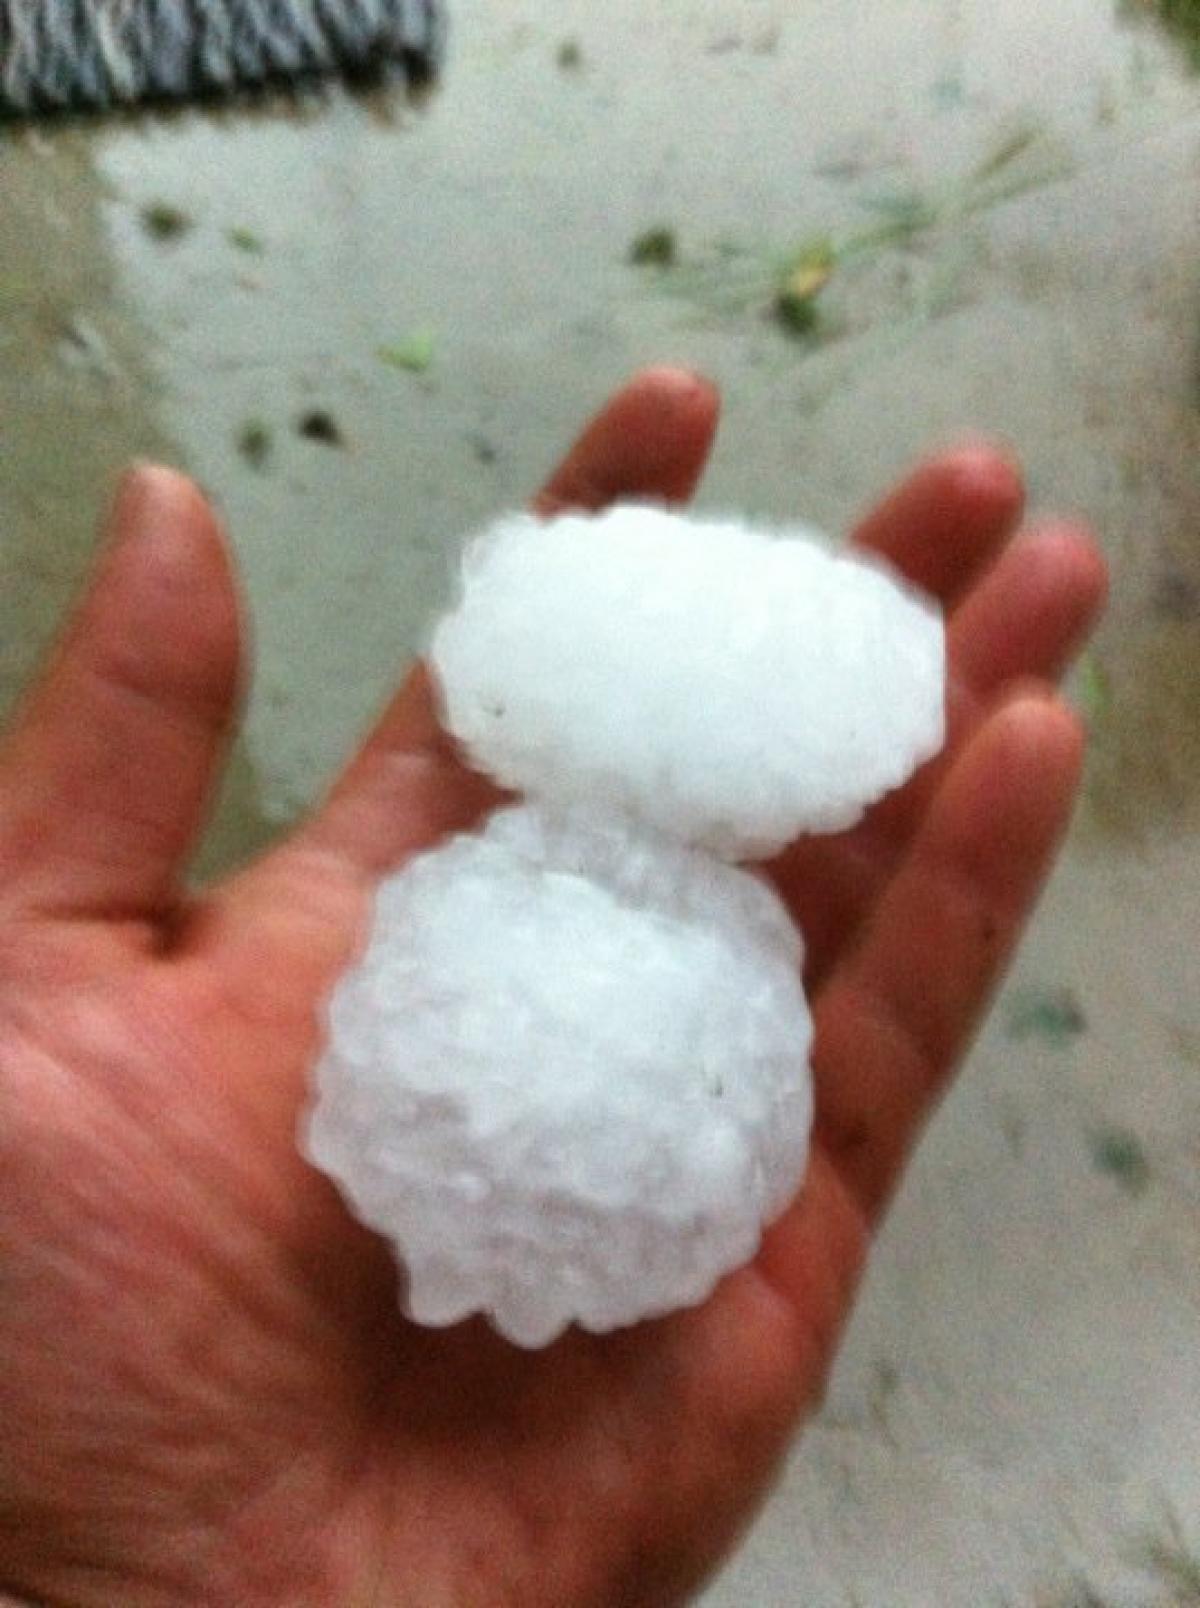 Oh, hail no!